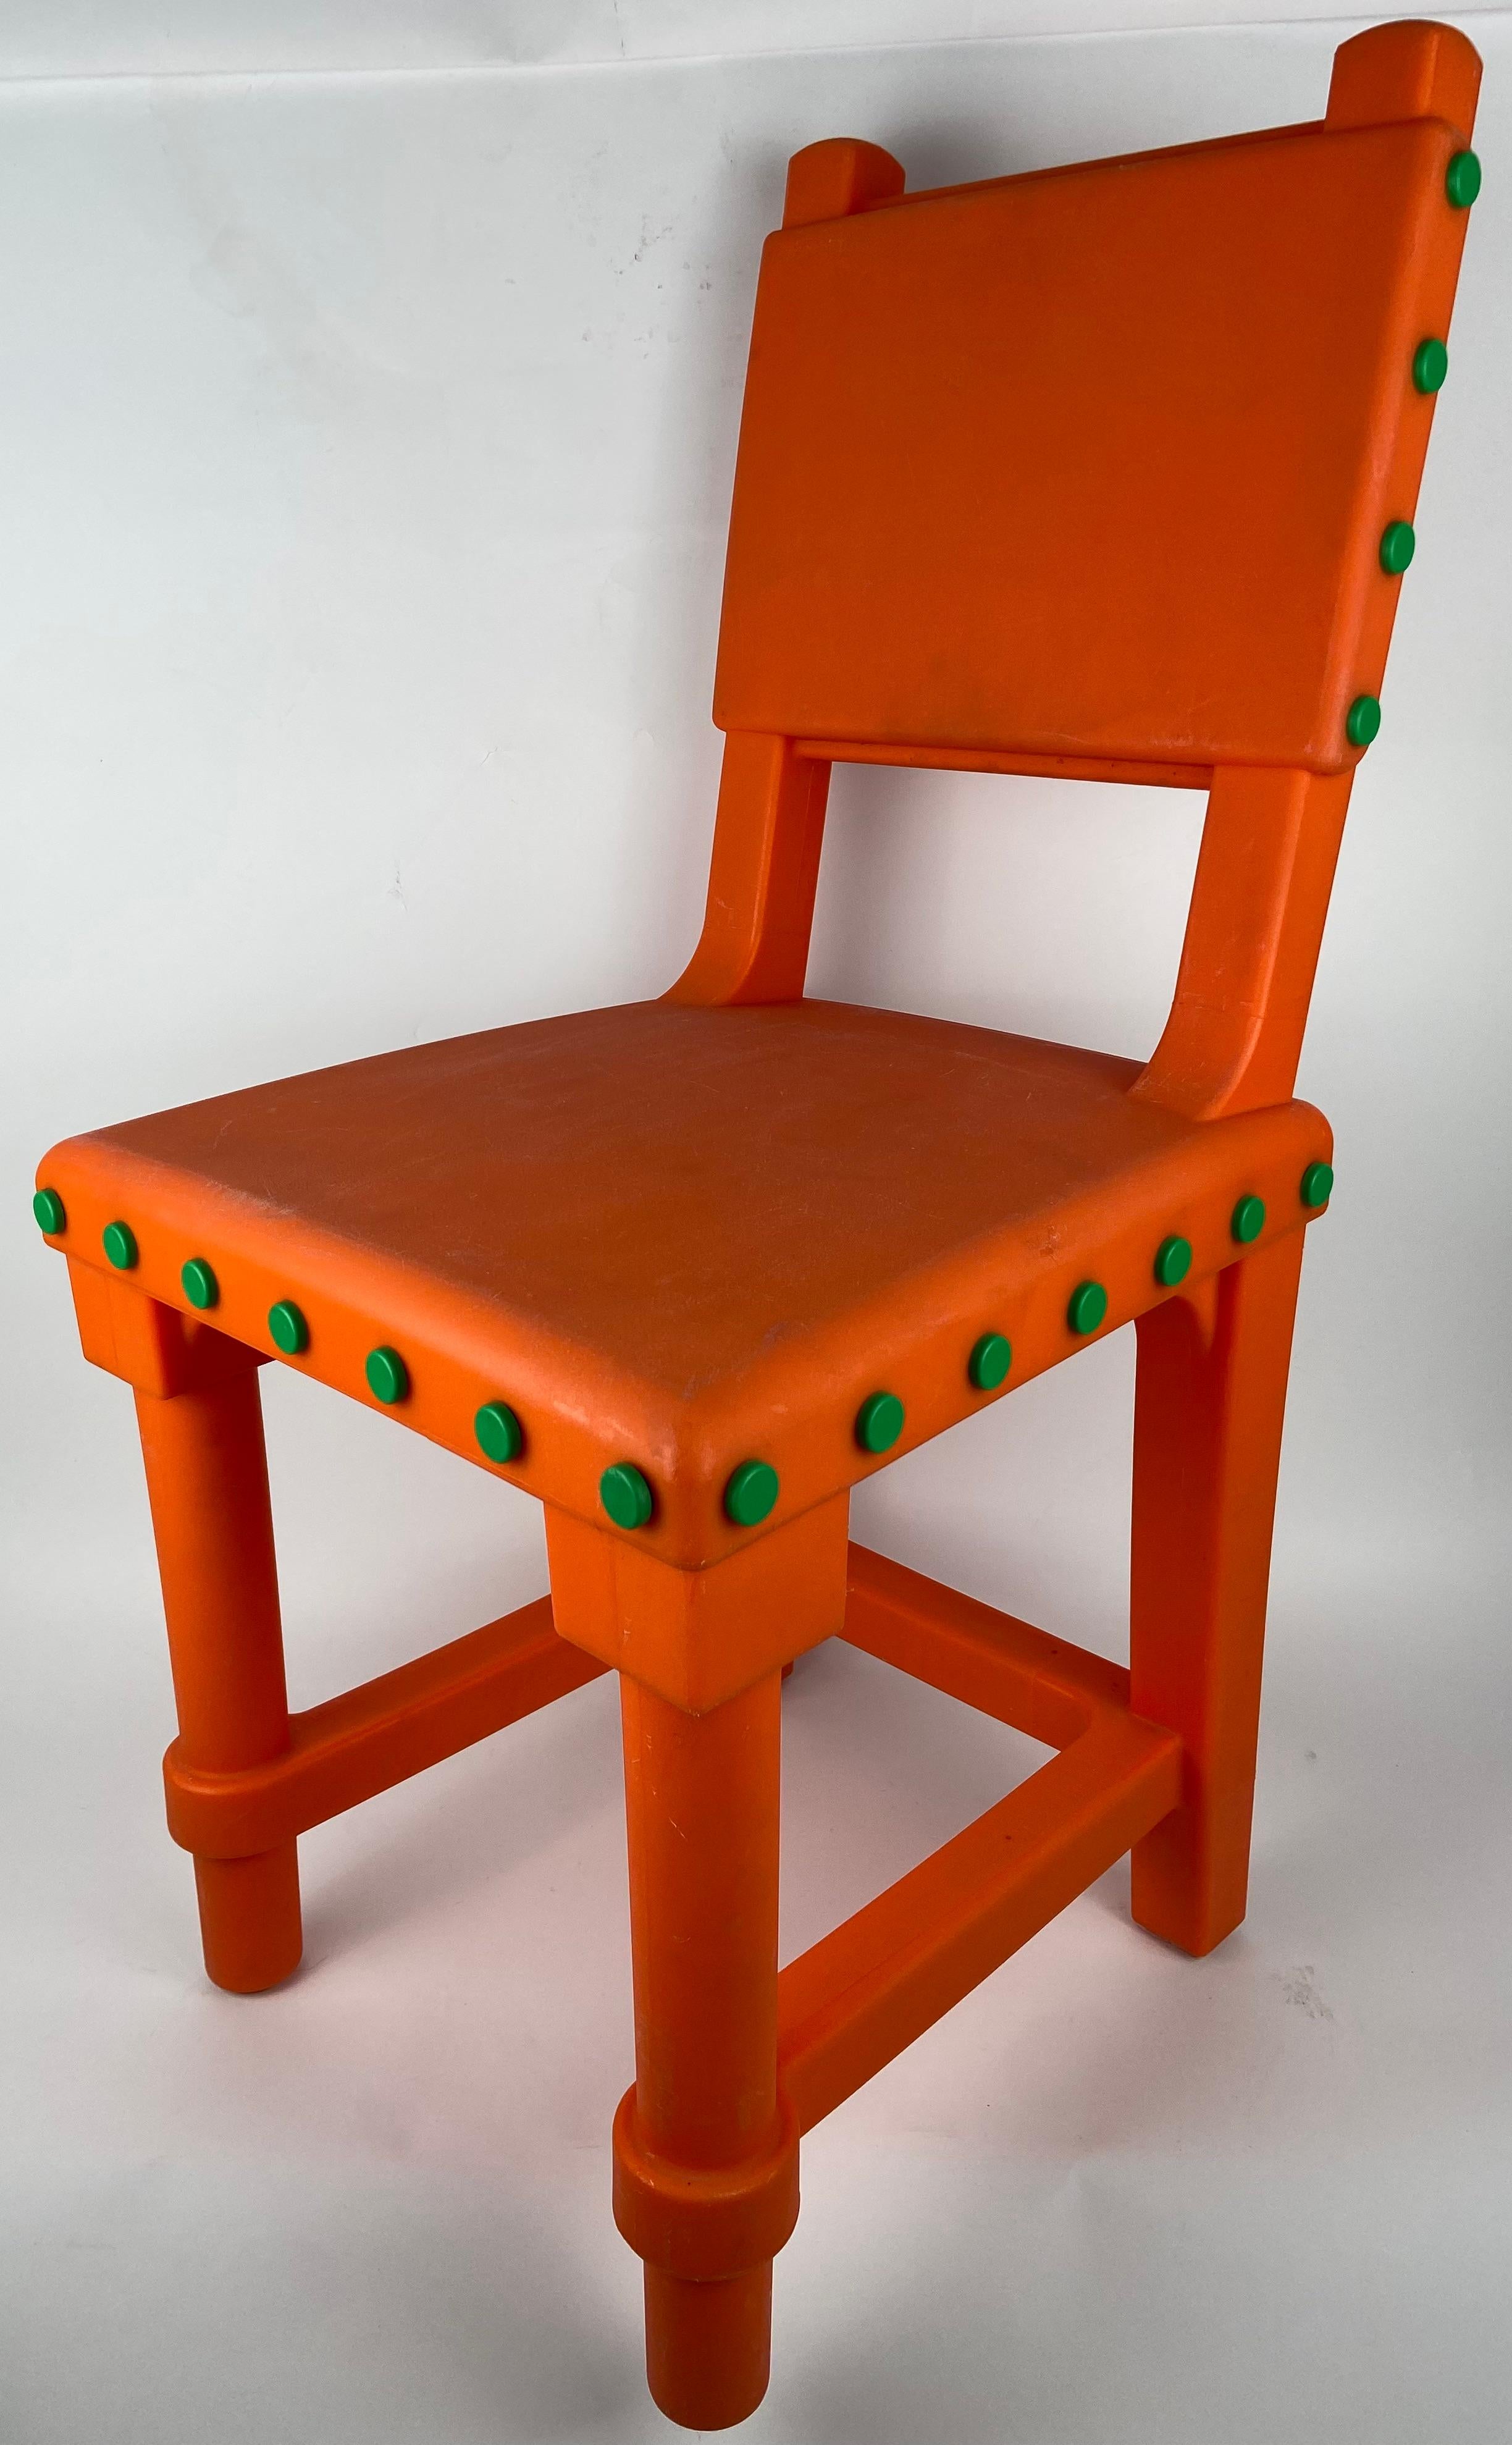 Gothic Stuhl von Moooi in Orange. Designer: Studio Job. CIRCA 2012